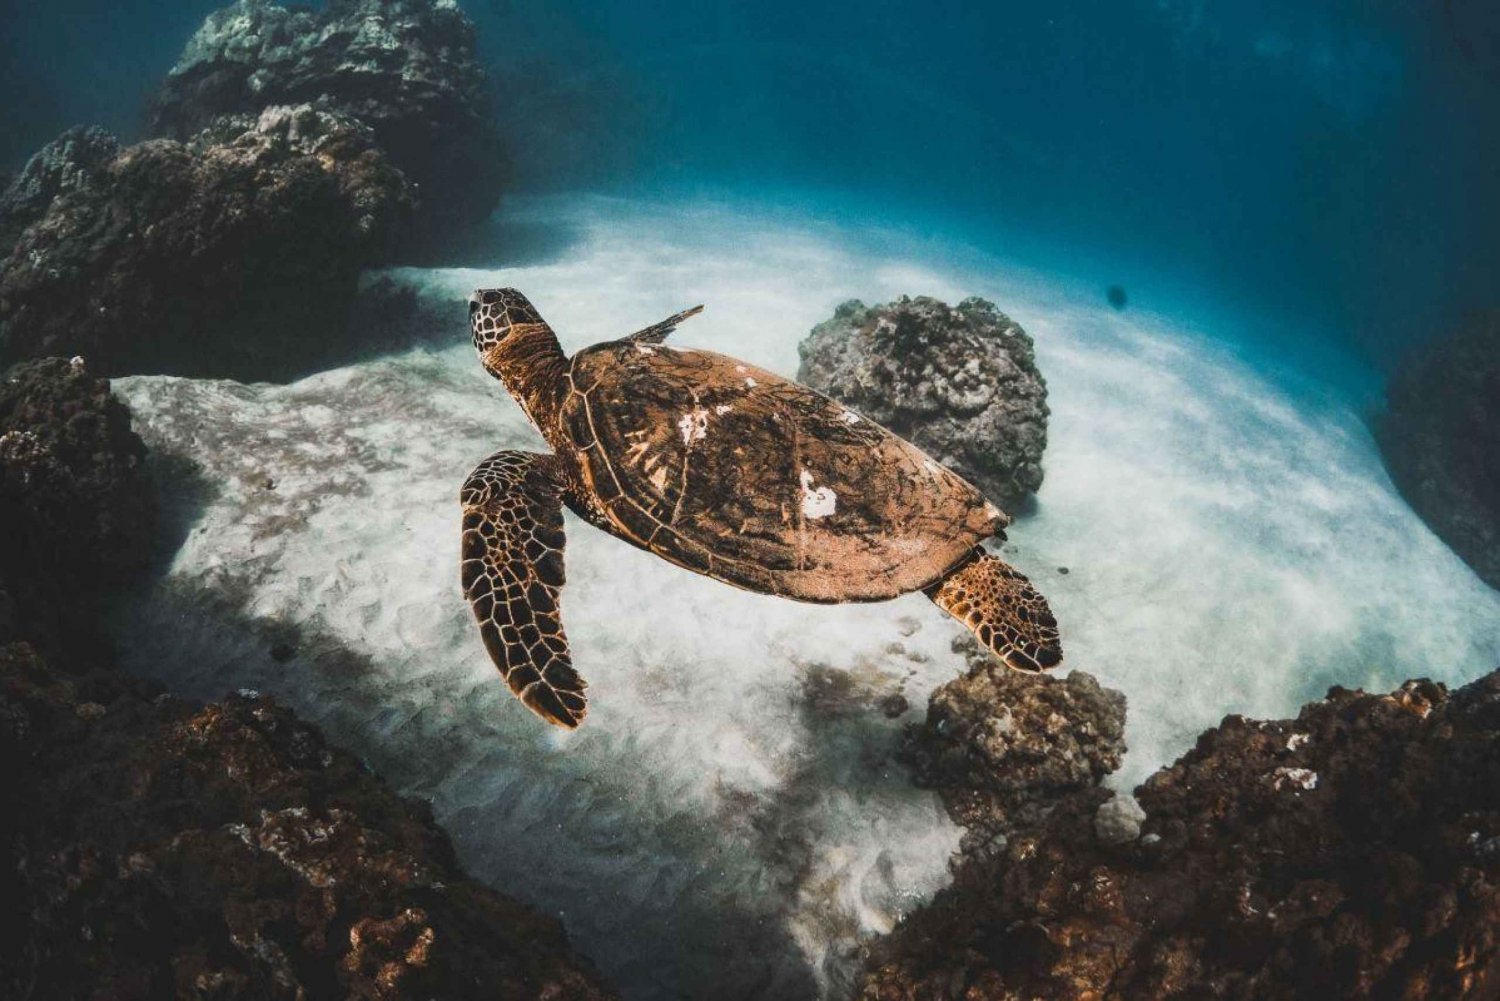 Alii Nui Eftermiddag Snorkling med sköldpaddor